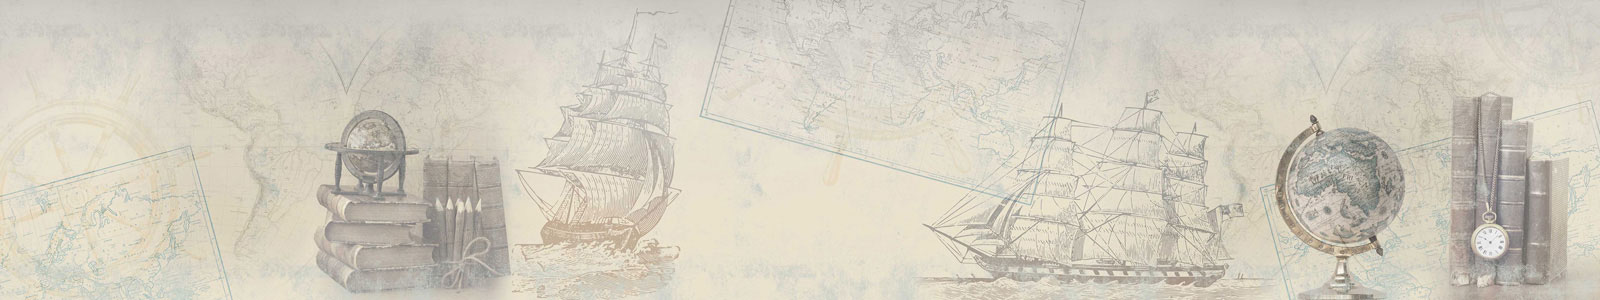 №4633 - Путешествия, старинные карты мира и рисунки кораблей